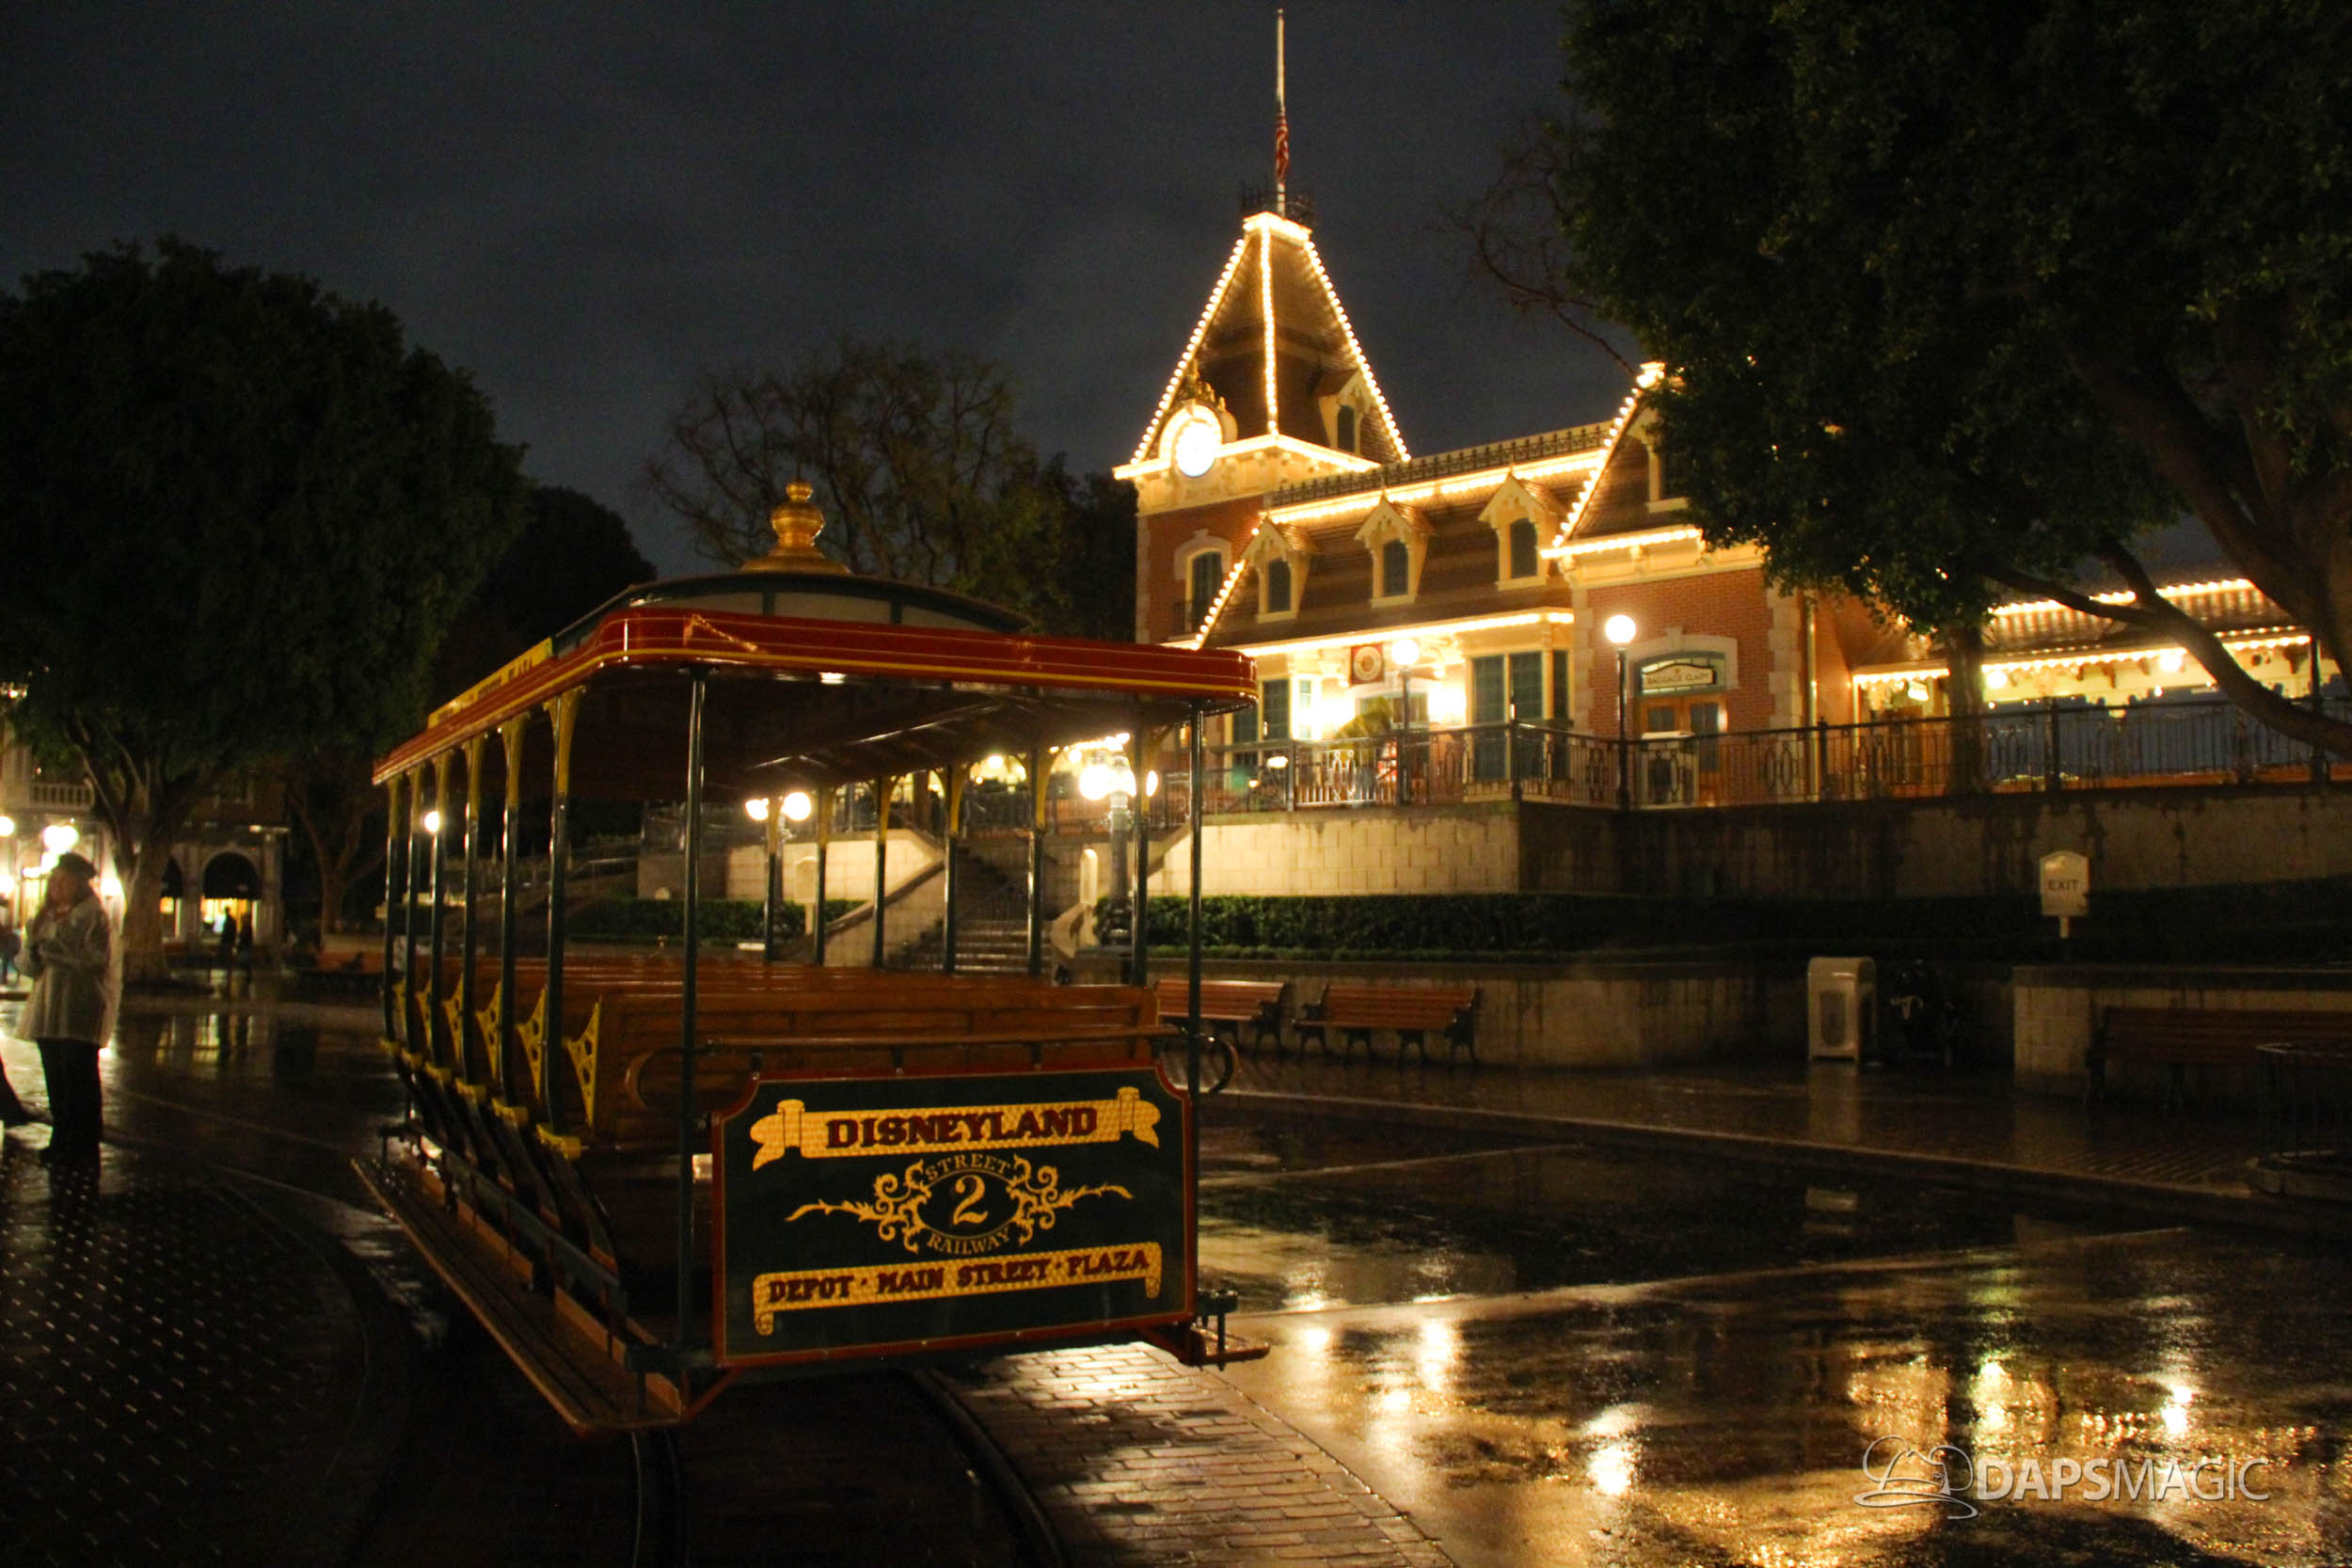 Rain Returns to the Disneyland Resort